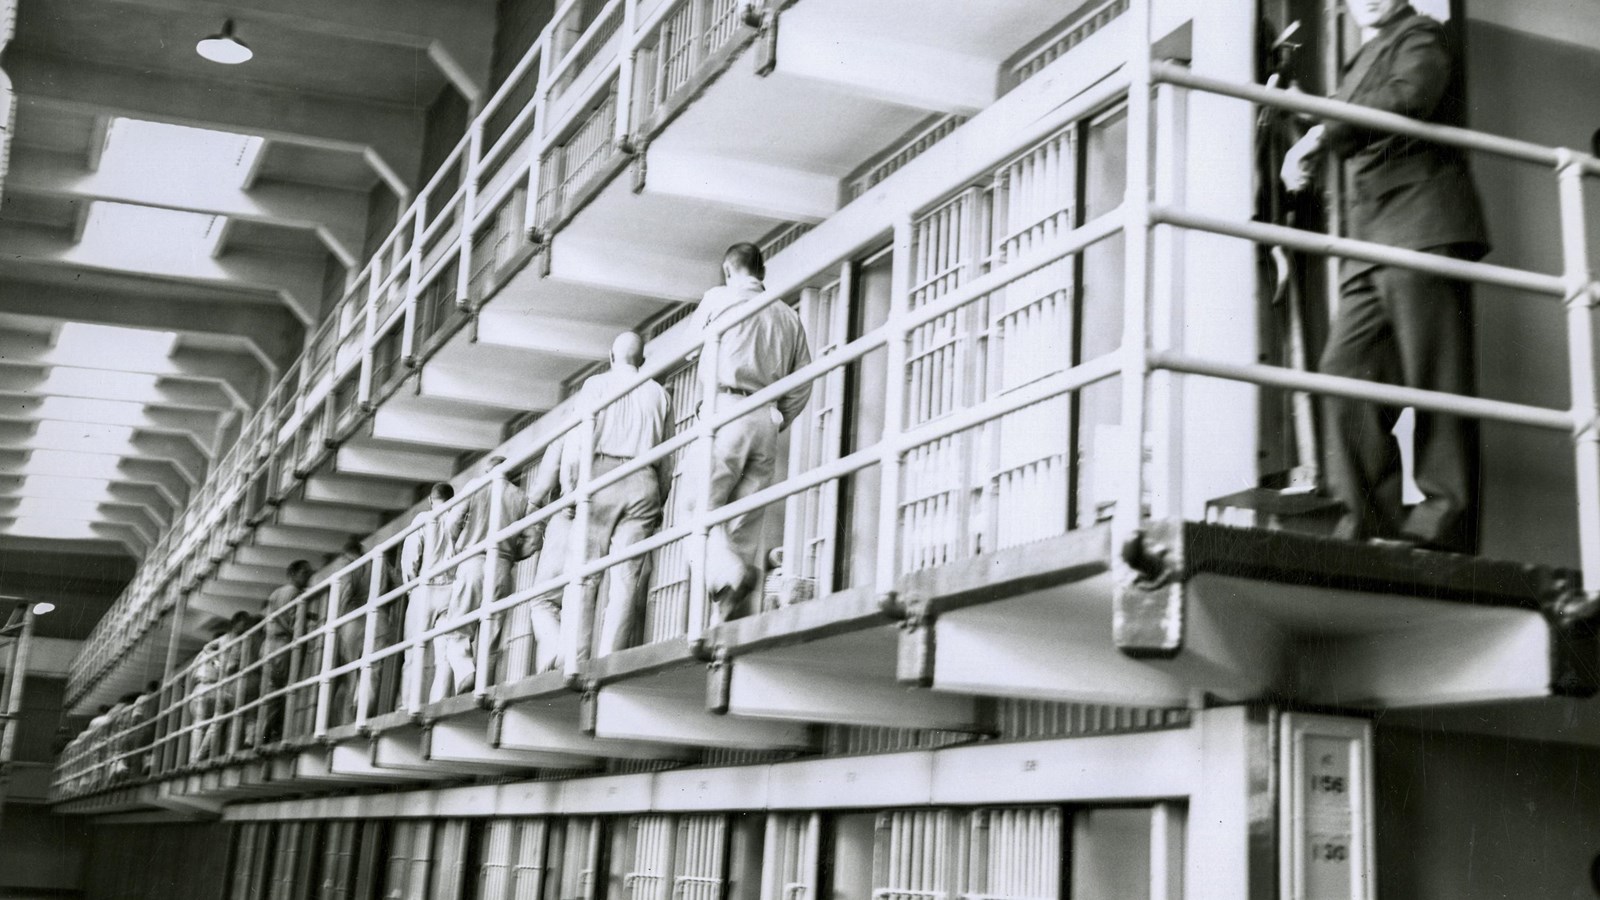 알카트라즈 연방 교도소(Alcatraz Federal Penitentiary)